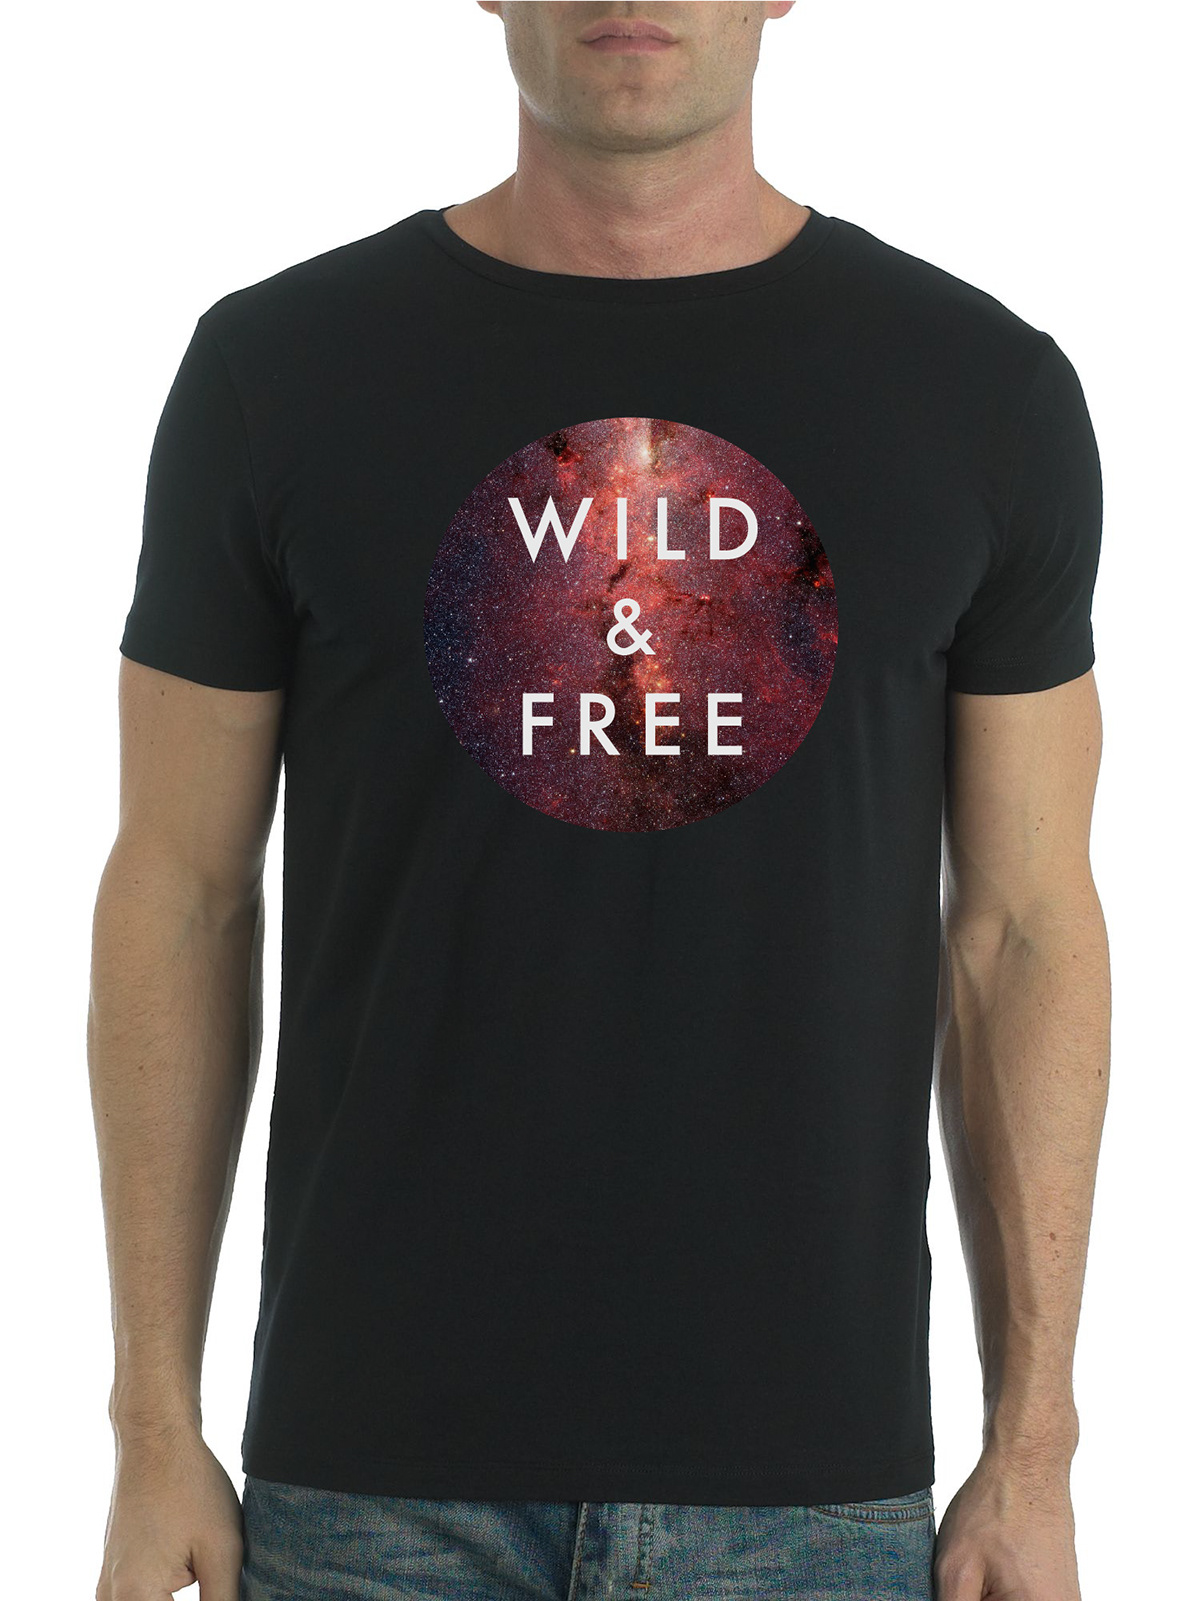 free spirit free spirit matthew davis matthew davis T-Shirt Design Clothing free spirit clothing Logo Design